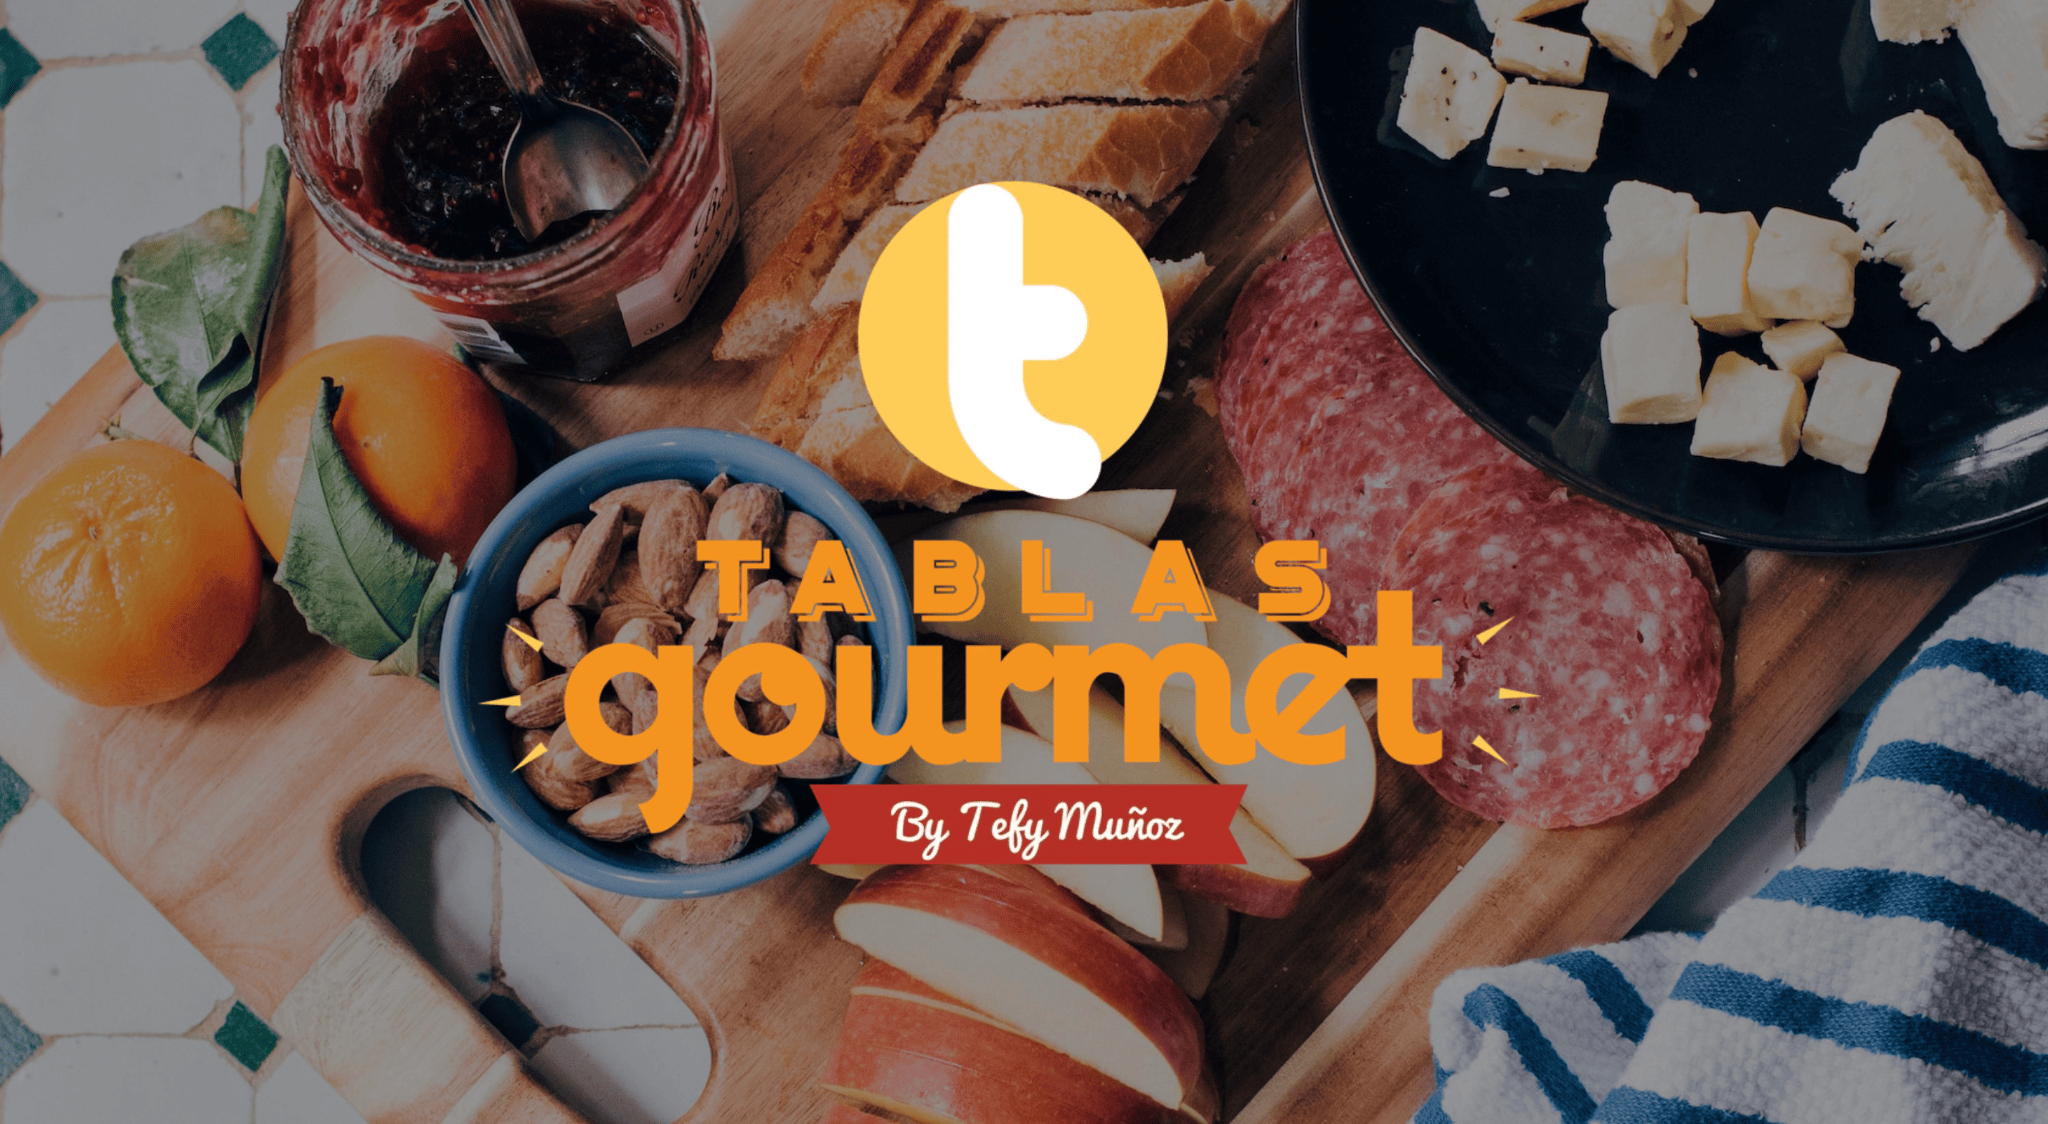 поразительно одностраничный сайт - tablas gourmet